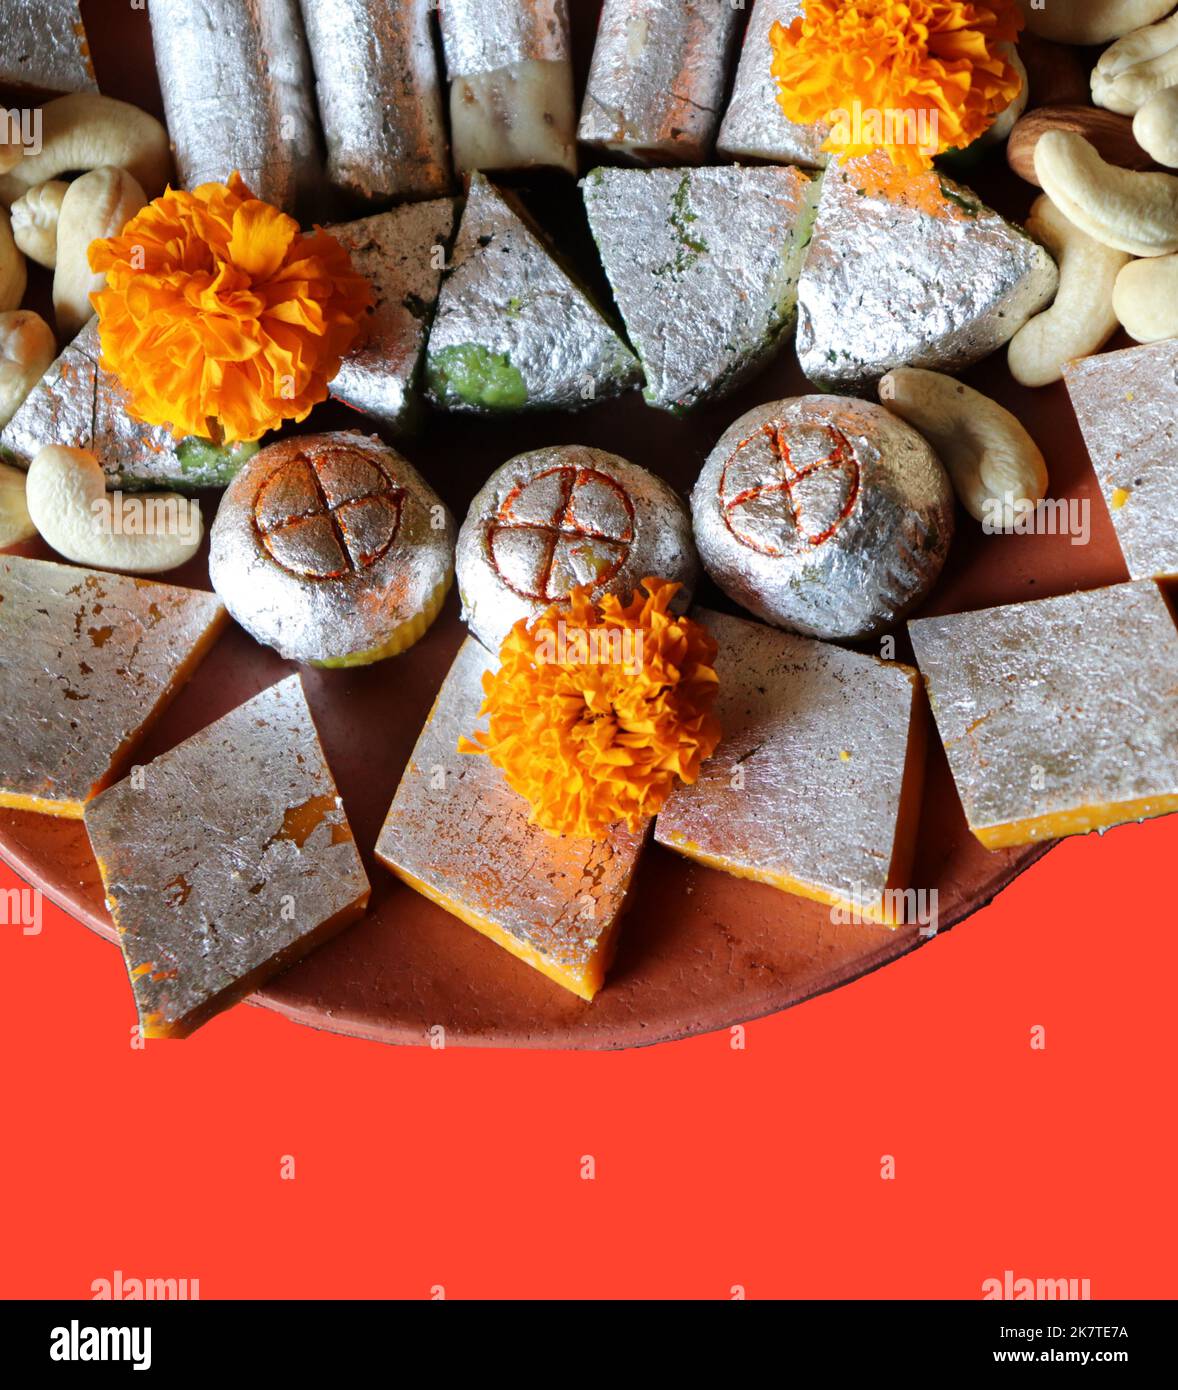 Assortiment de bonbons indiens/fruits secs/fleurs de marigold dans une assiette en terre cuite/argile sur fond rouge - festival Diwali/Deepavali Banque D'Images